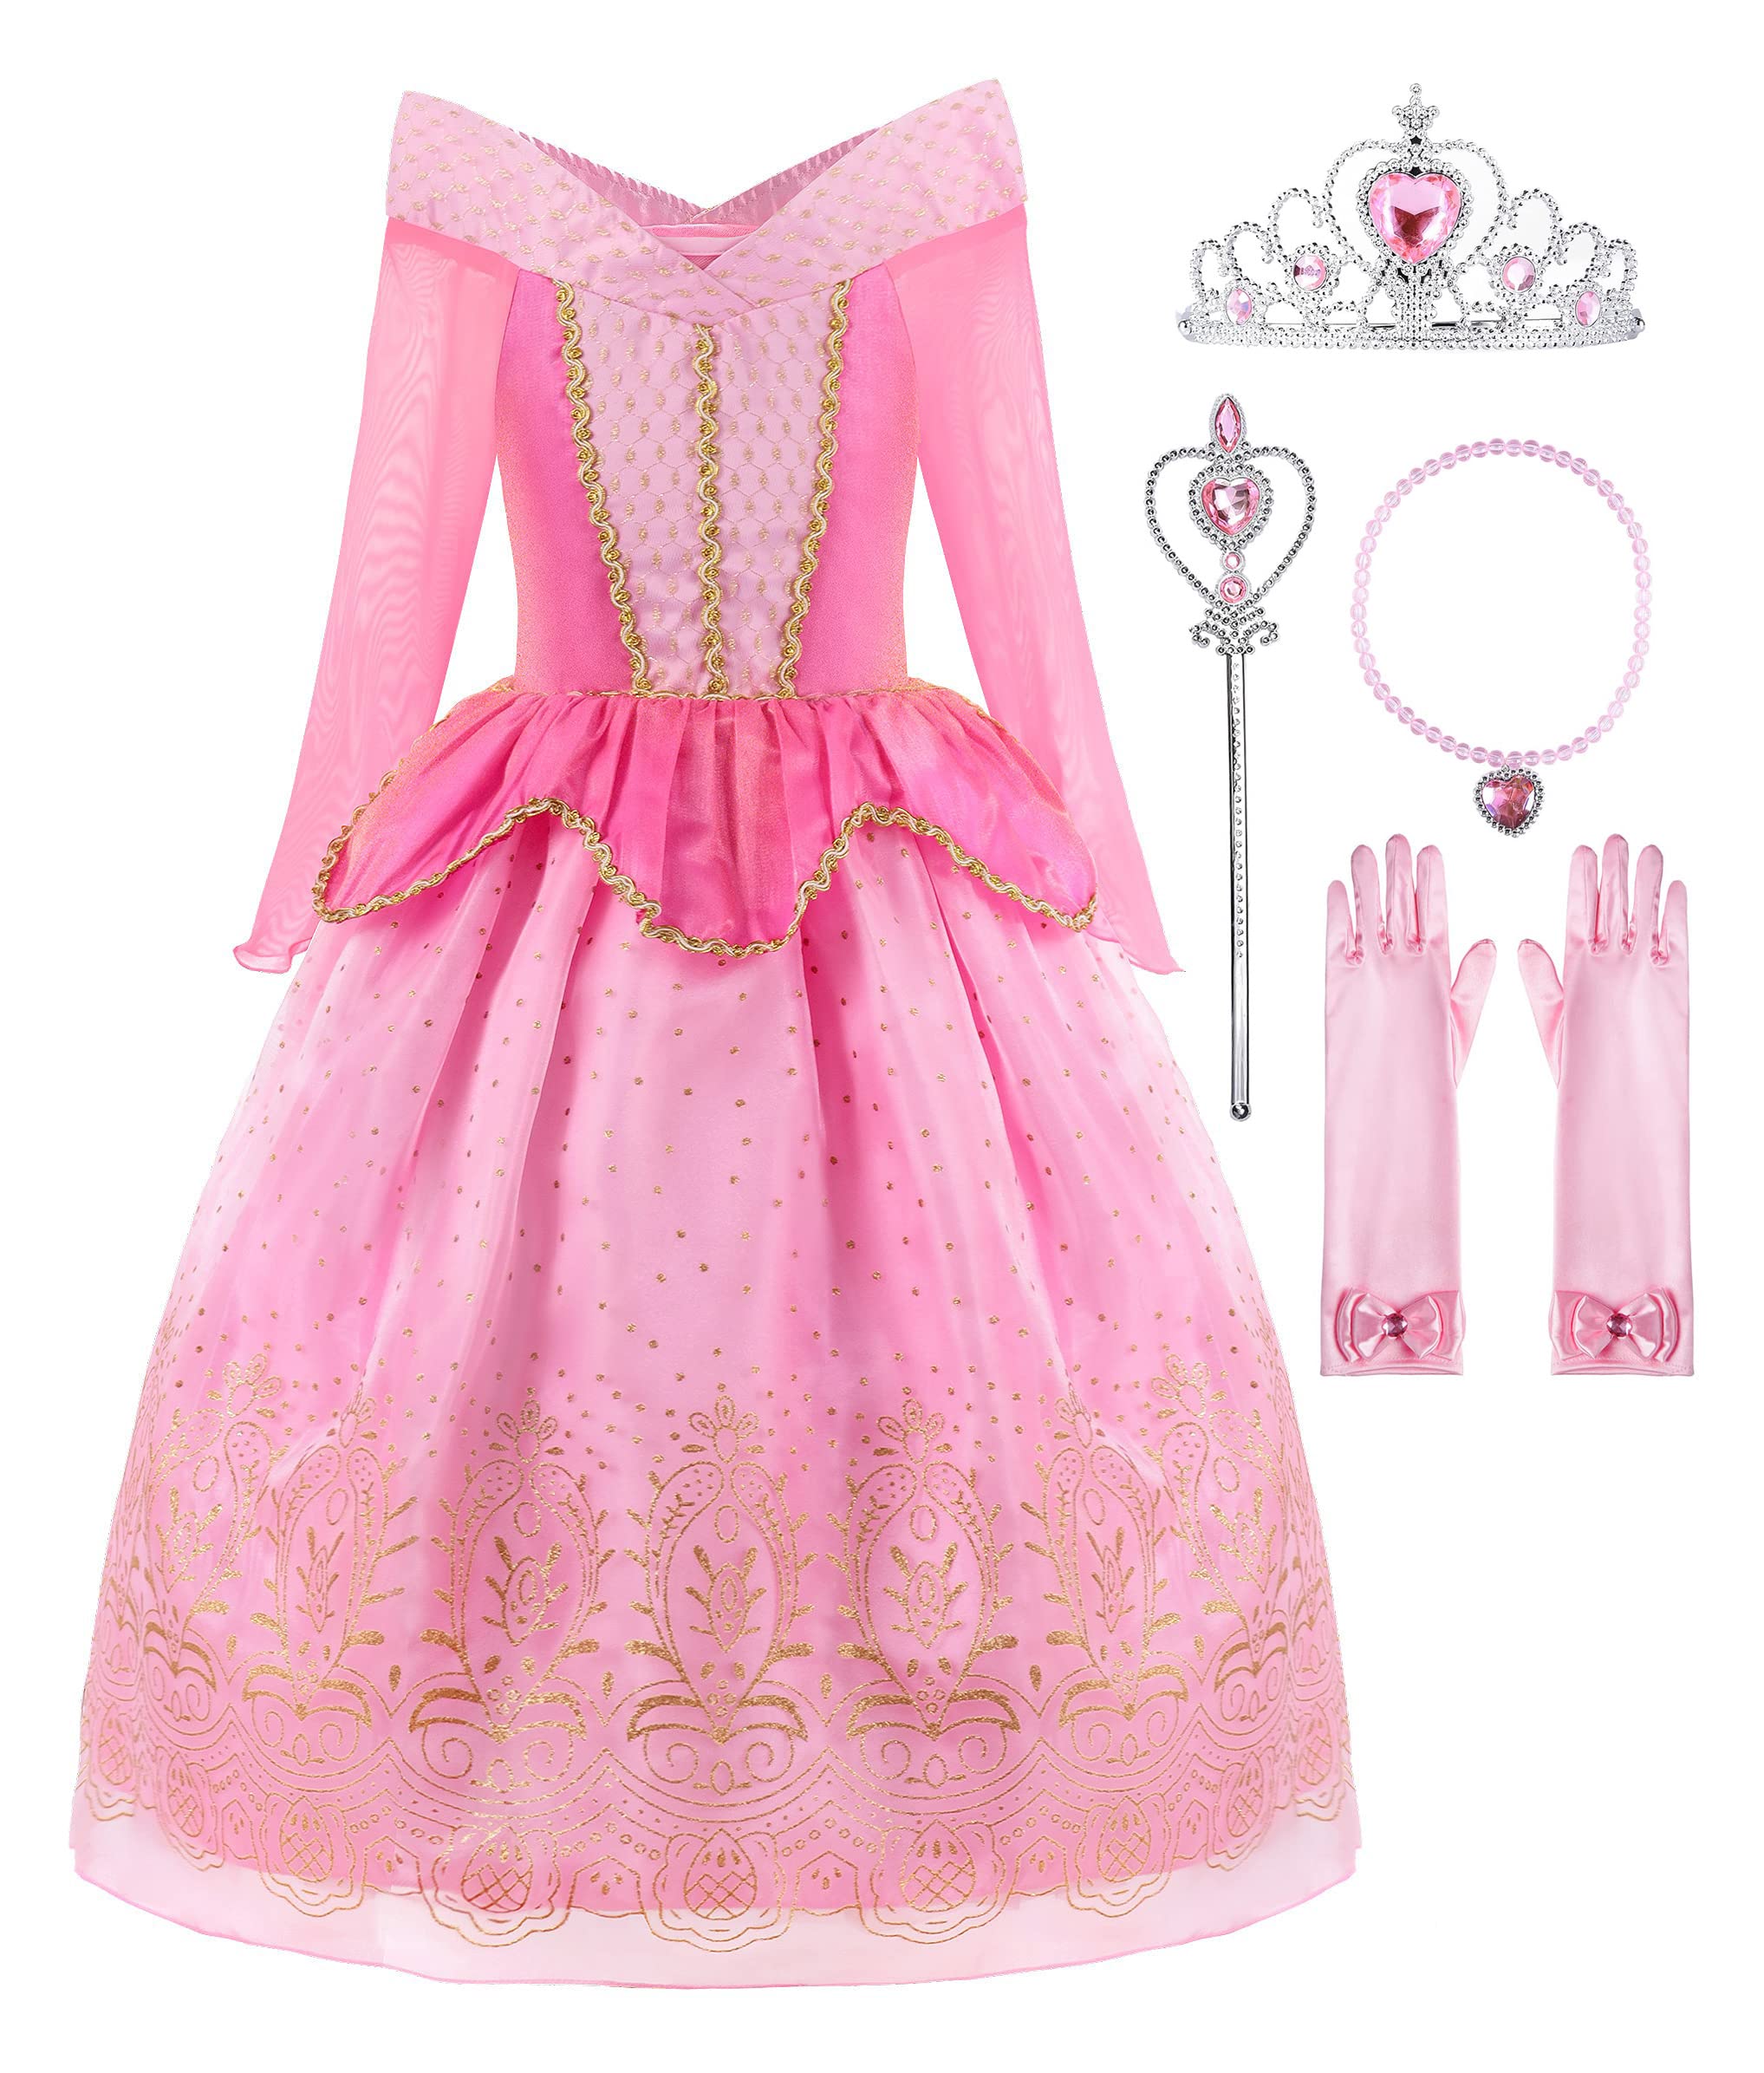 ReliBeauty Girls Princess Dress up Costume